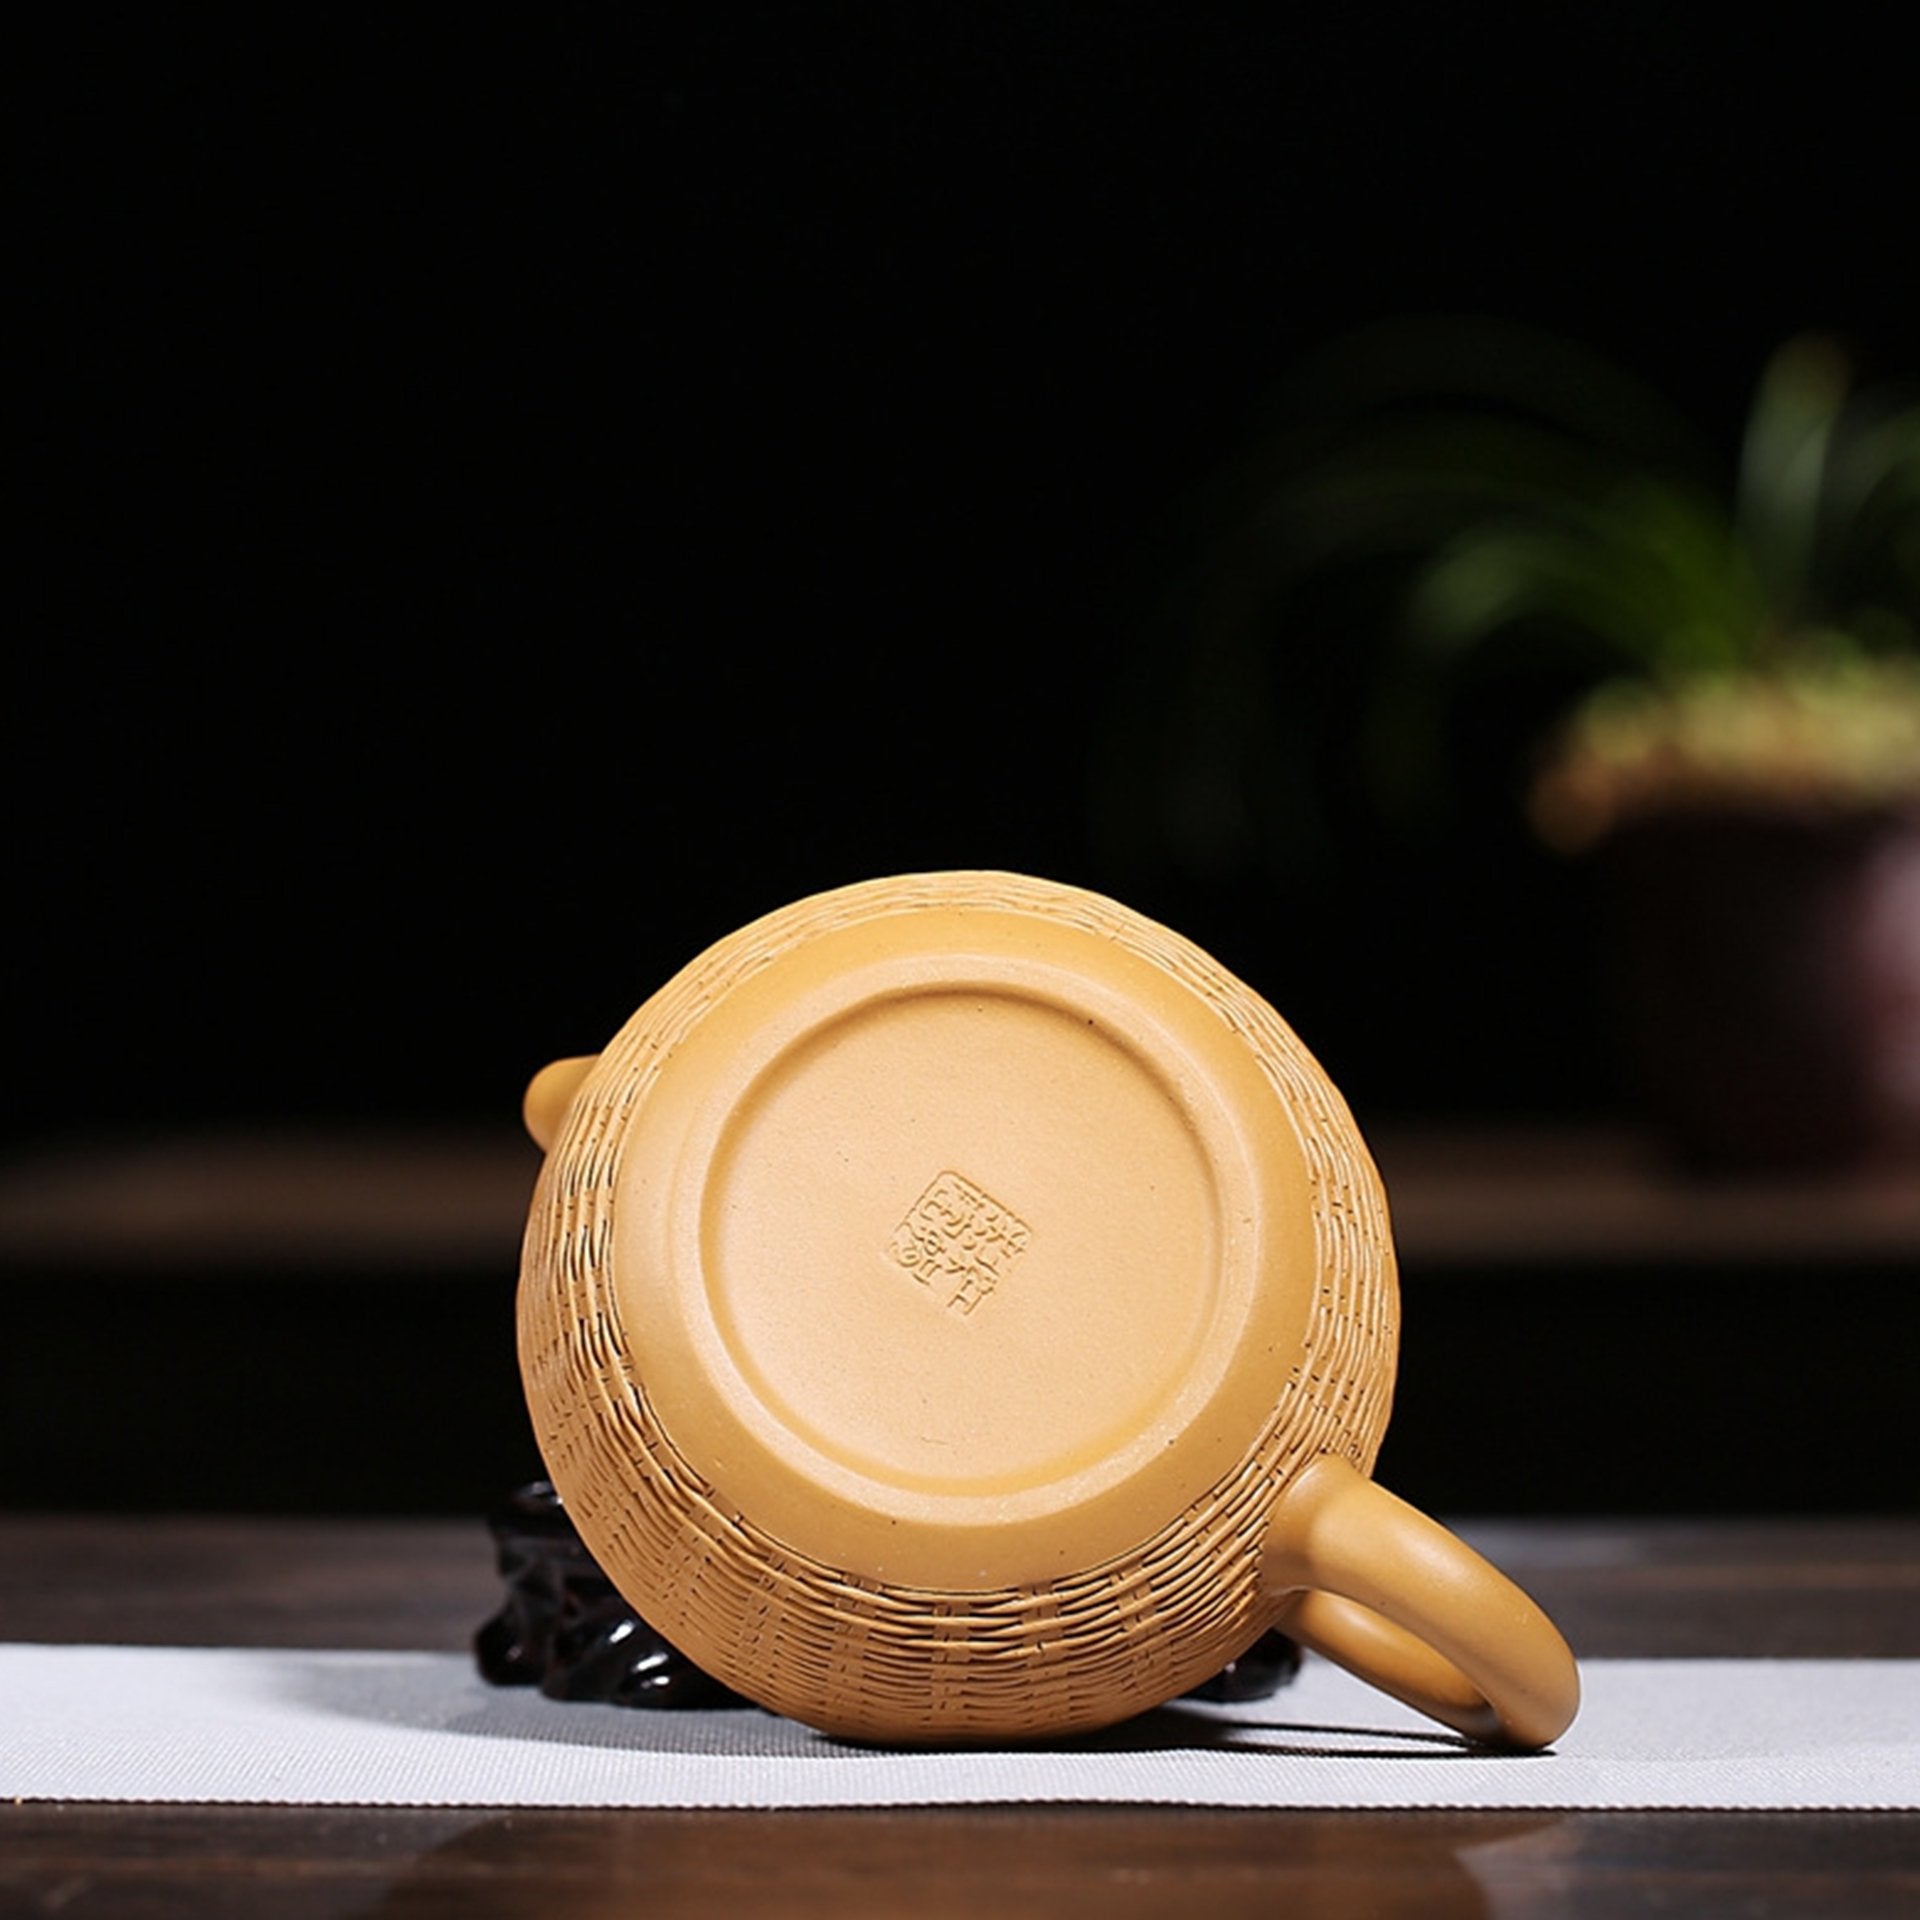 Bottom view of a golden textured teapot showing maker's mark.